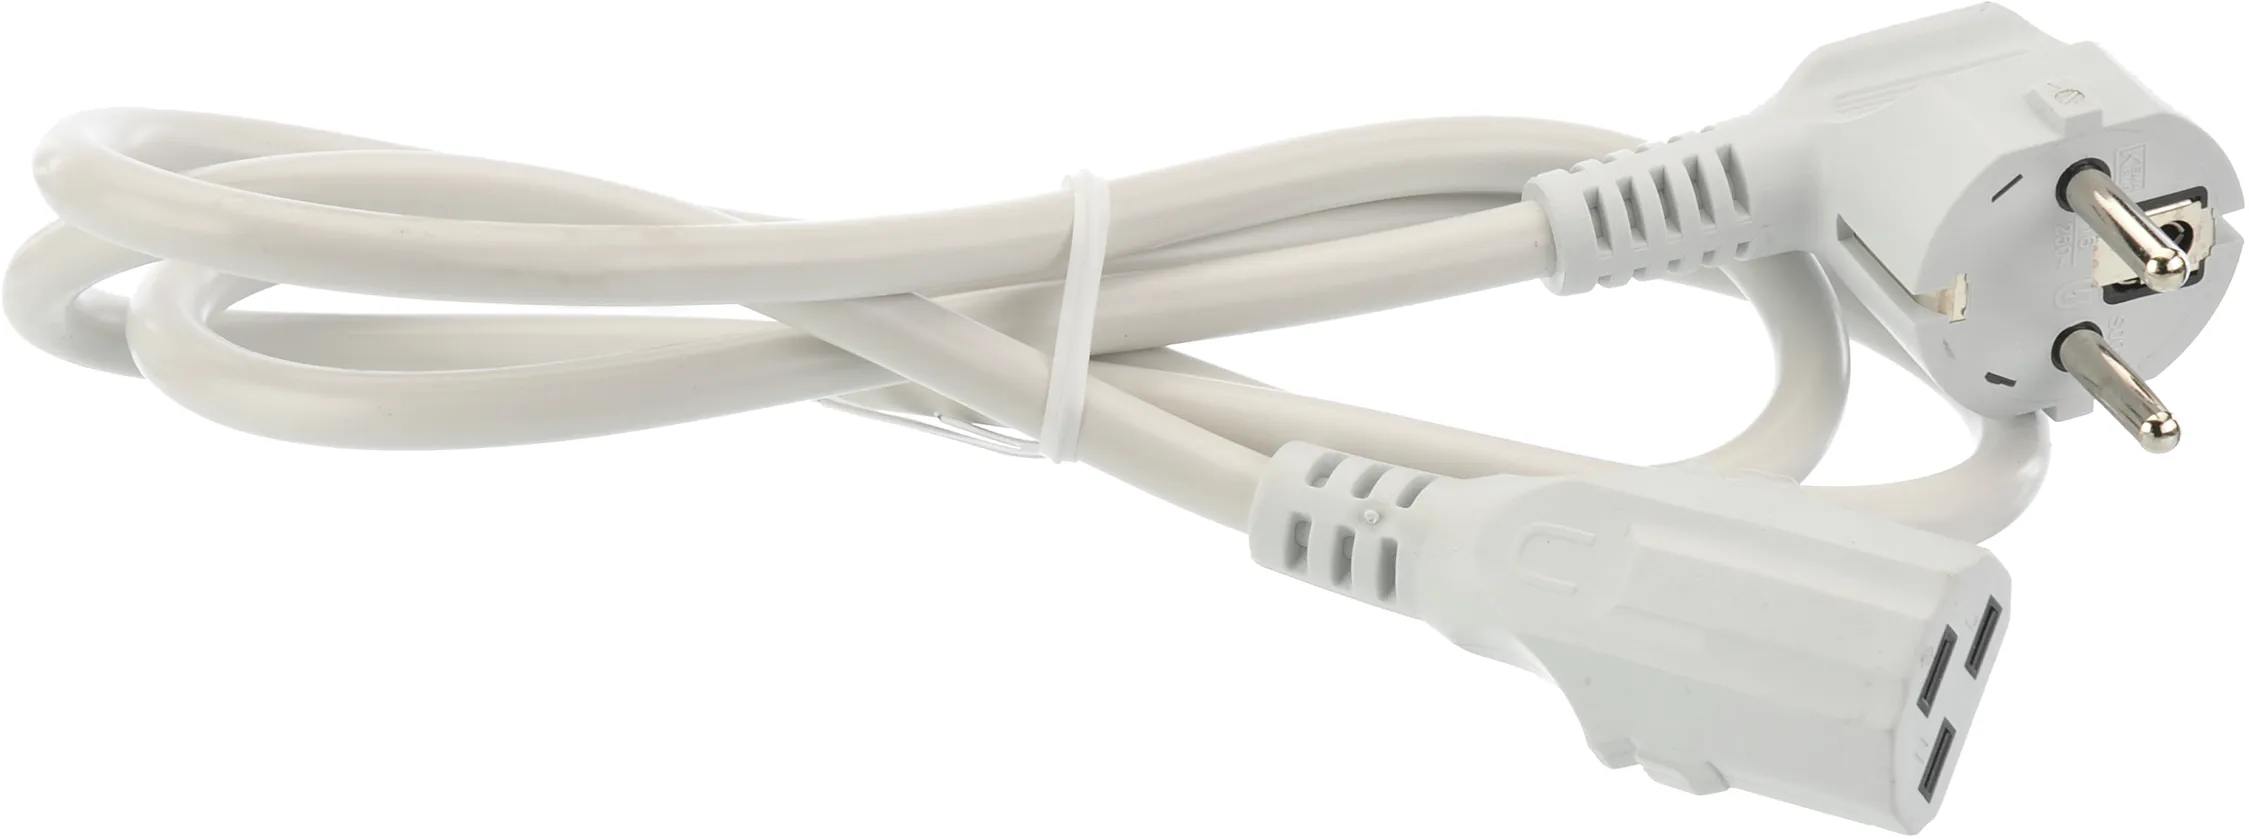 Cable de raccordement Câble de raccordement LG 1200 mm | Câble de LG 3000mm sous la Réf. 00468235 